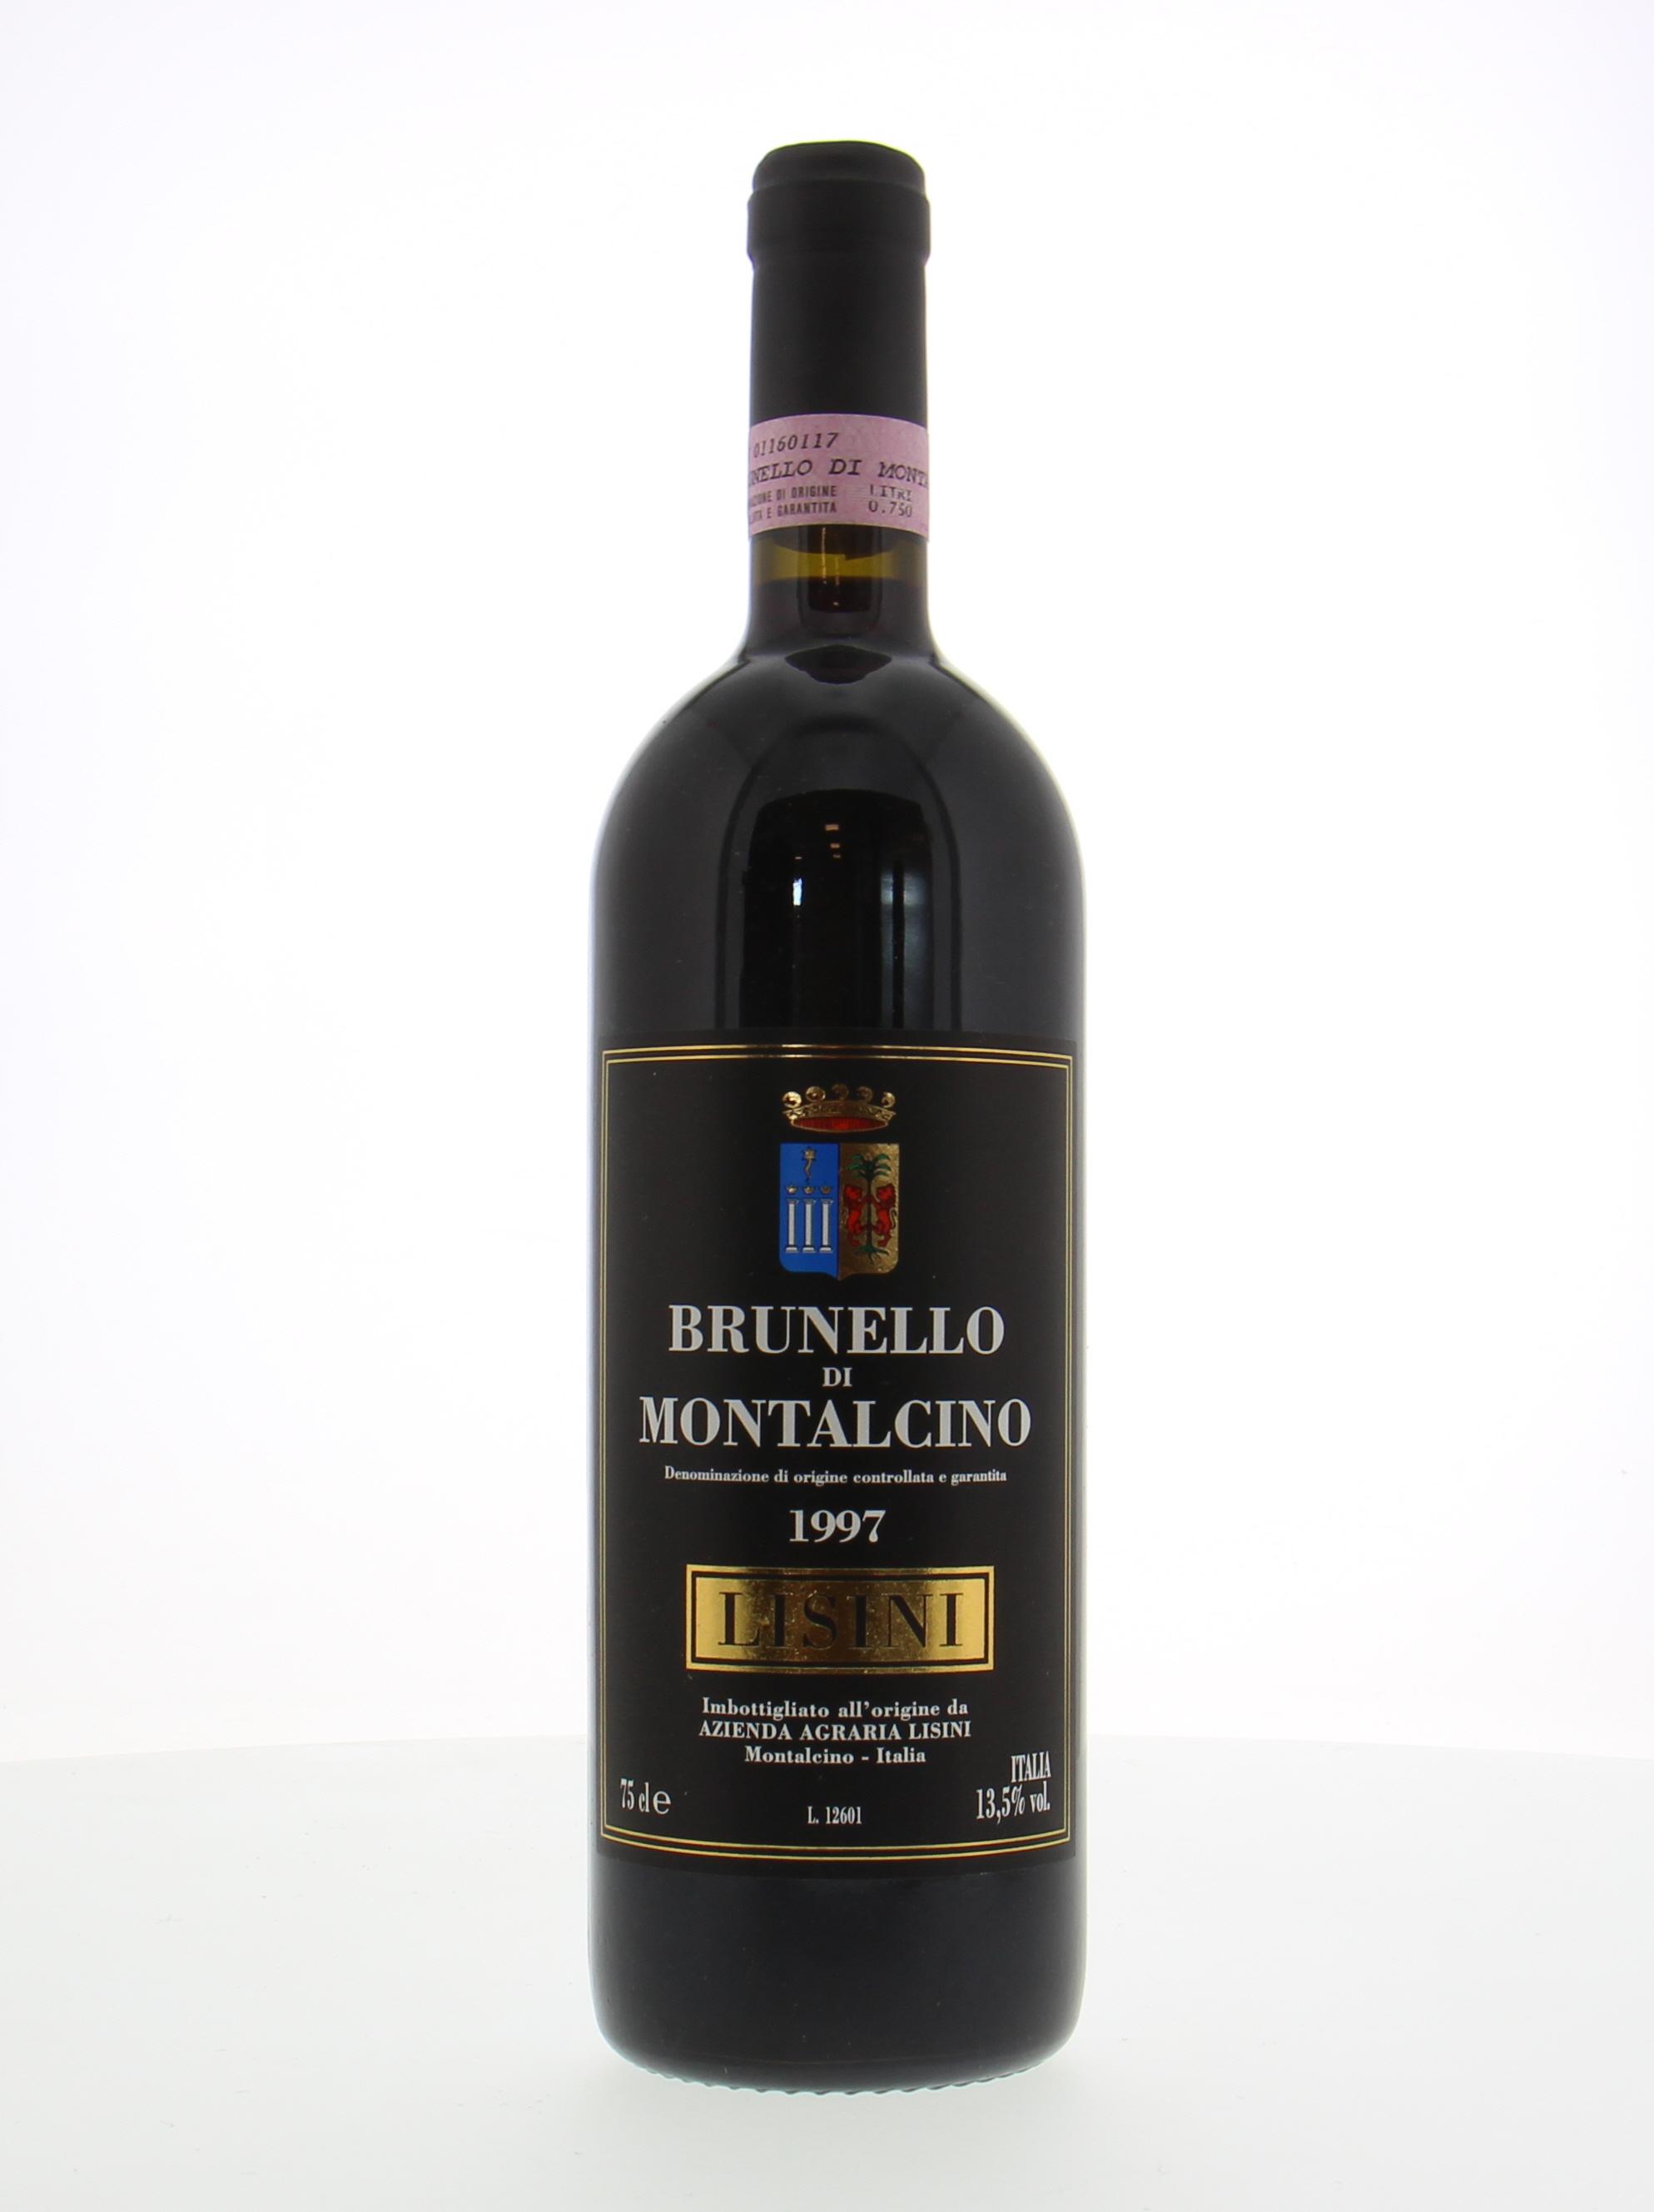 Lisini - Brunello di Montalcino 1997 Perfect